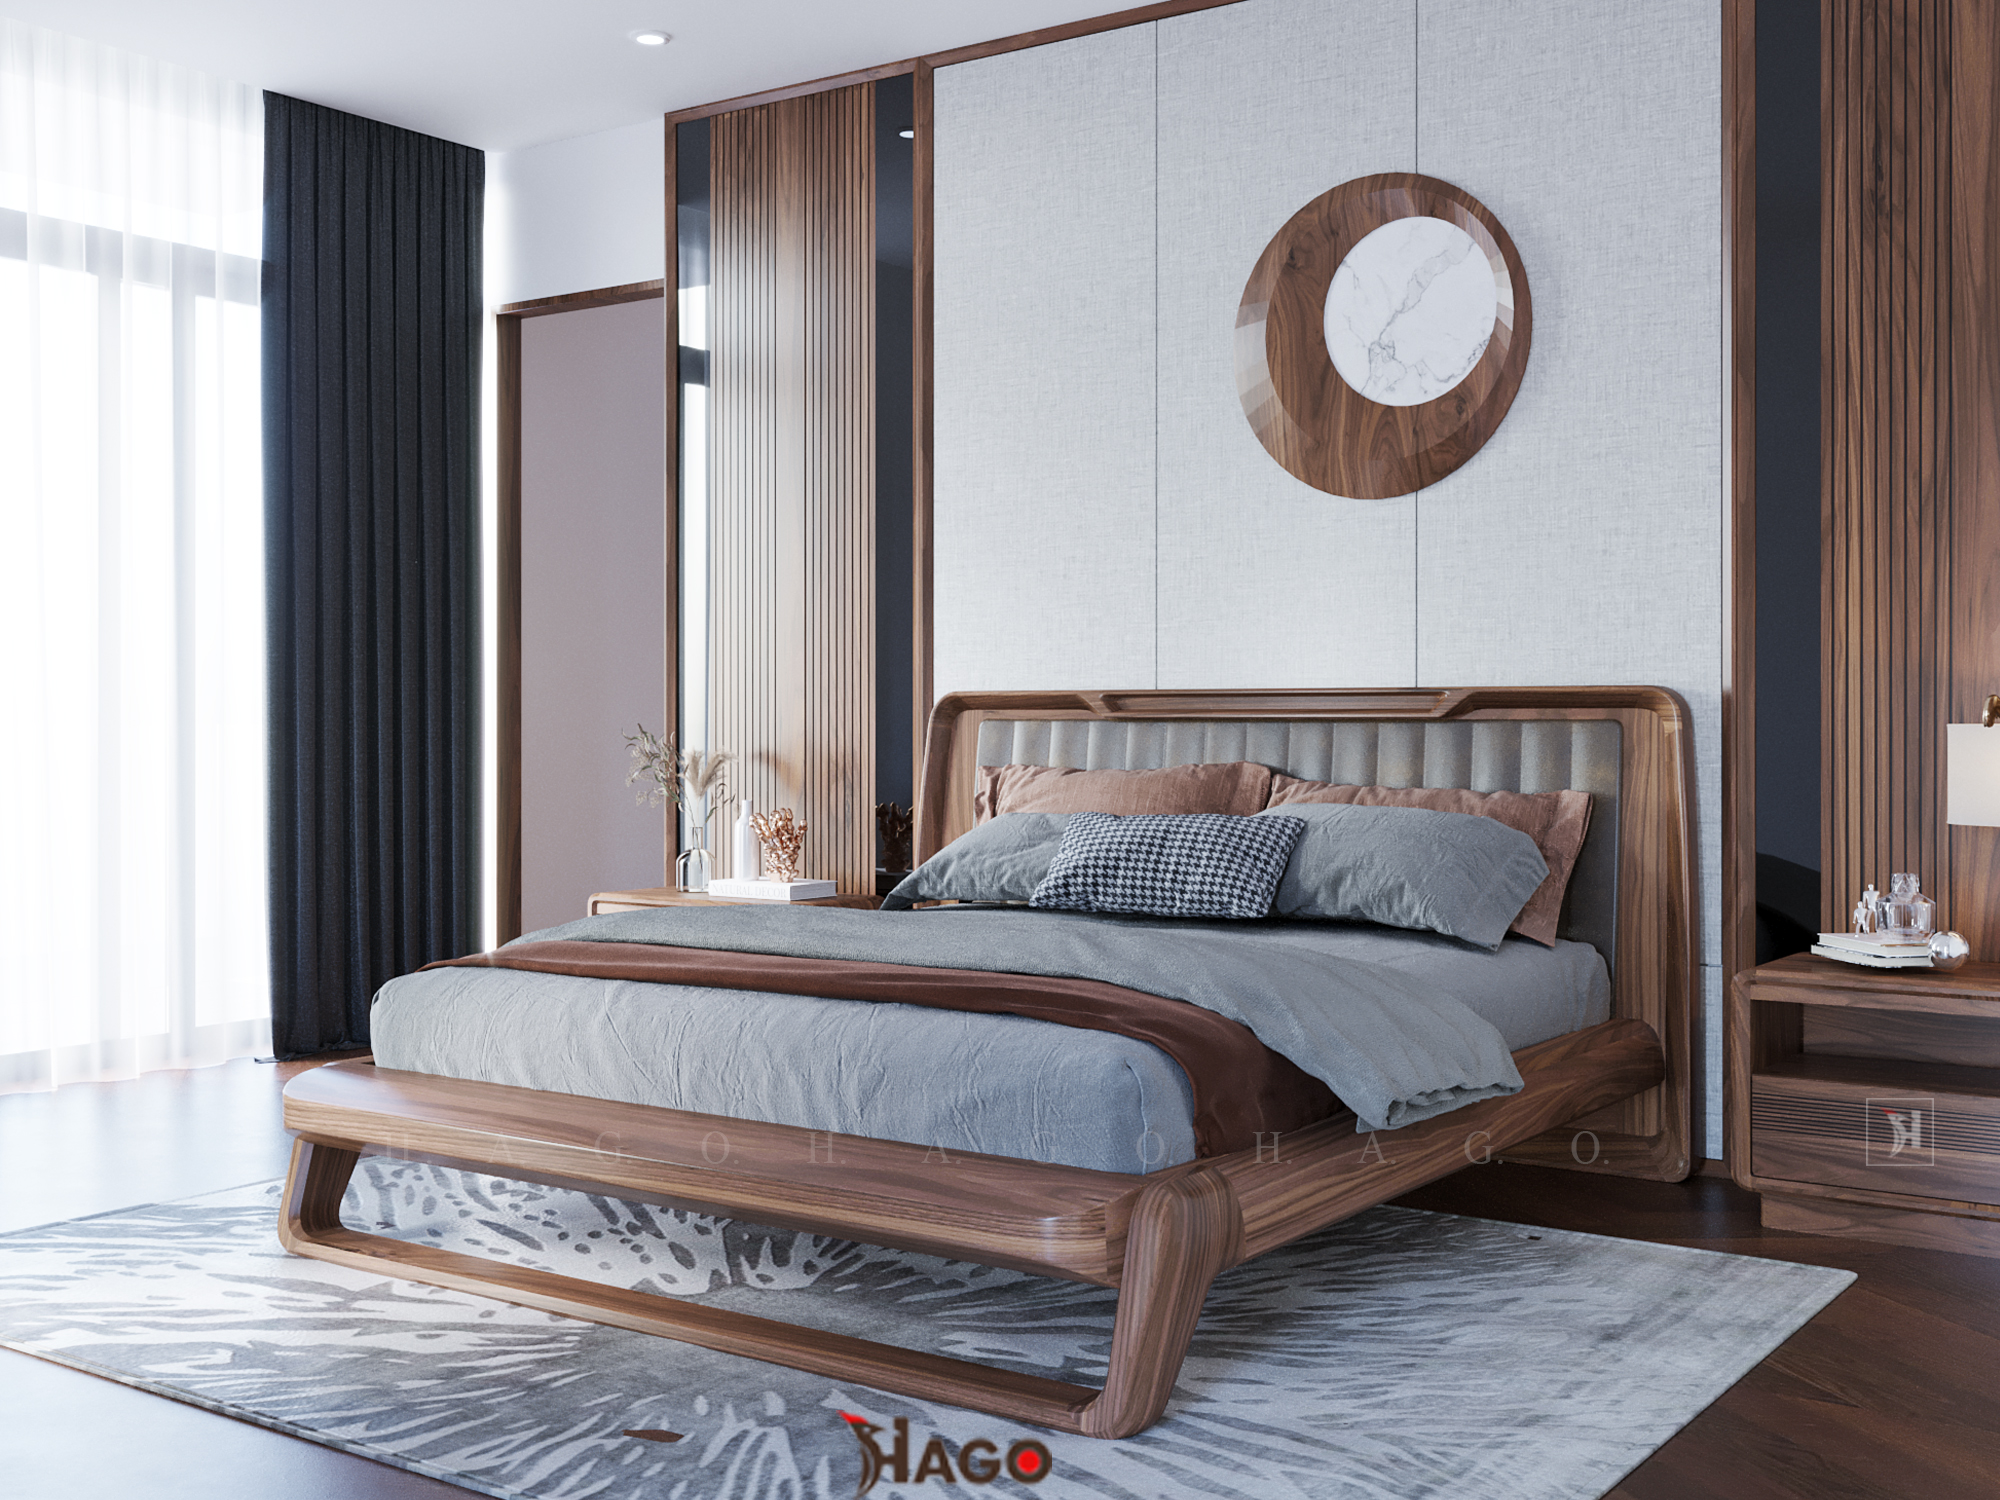 Giường ngủ gỗ óc chó: Nếu bạn đang tìm kiếm một chiếc giường ngủ độc đáo và bền vững, giường ngủ gỗ óc chó là sự lựa chọn hoàn hảo cho bạn. Sản phẩm được làm từ chất liệu gỗ tự nhiên cao cấp và có thiết kế đẹp mắt, chắc chắn. Đến và tận hưởng một giấc ngủ hoàn hảo trên chiếc giường đặc biệt này.